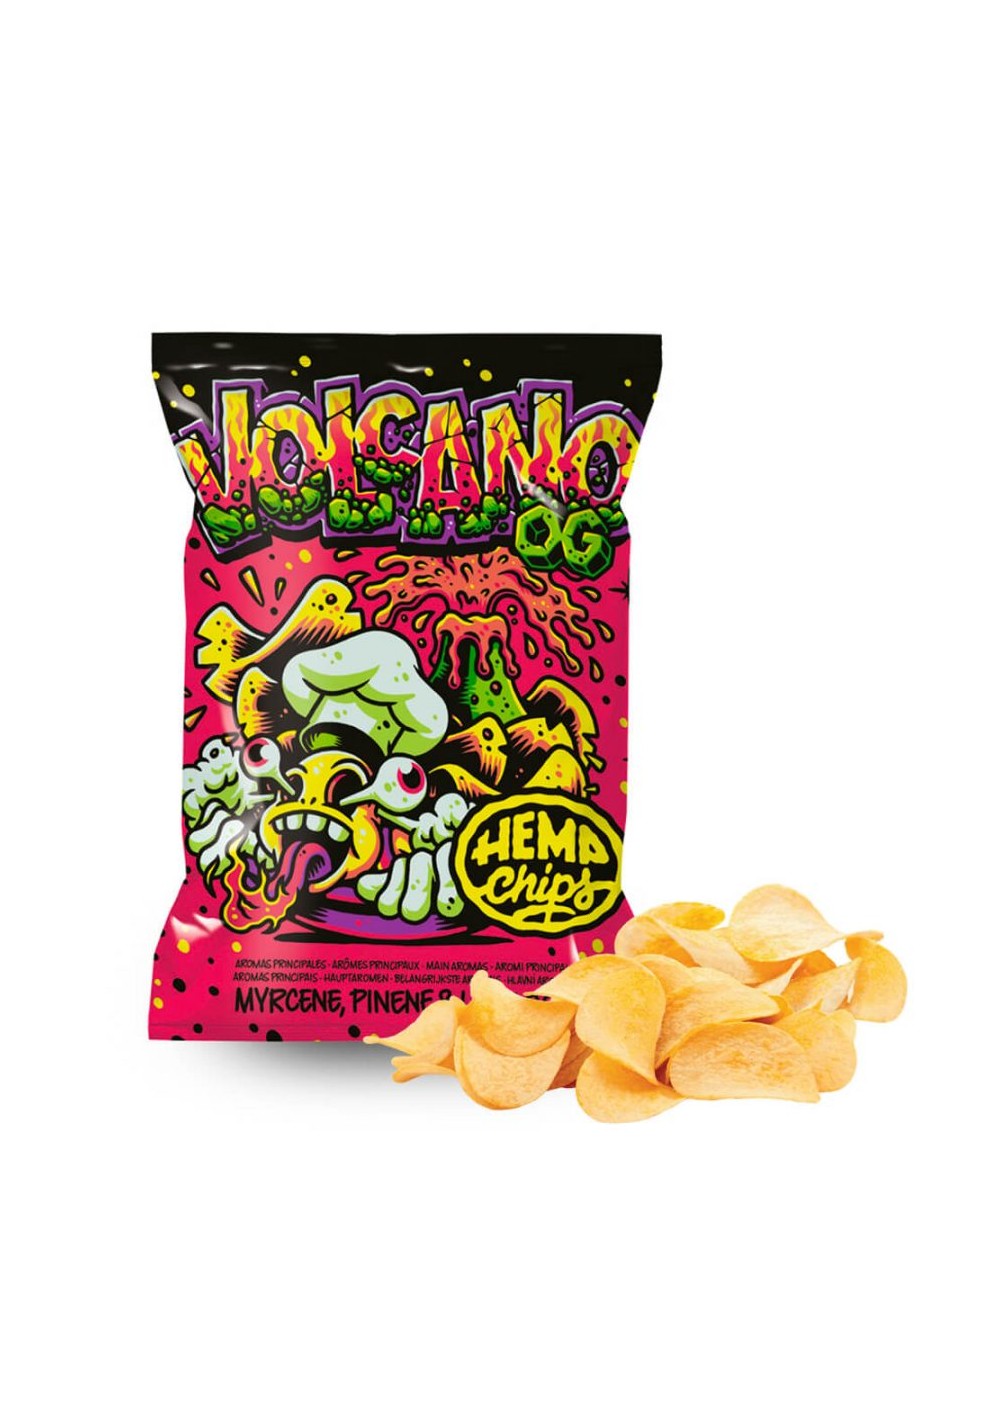 Hemp Chips Volcano OG Patatine Artigianali alla Cannabis senza THC (35g) Home